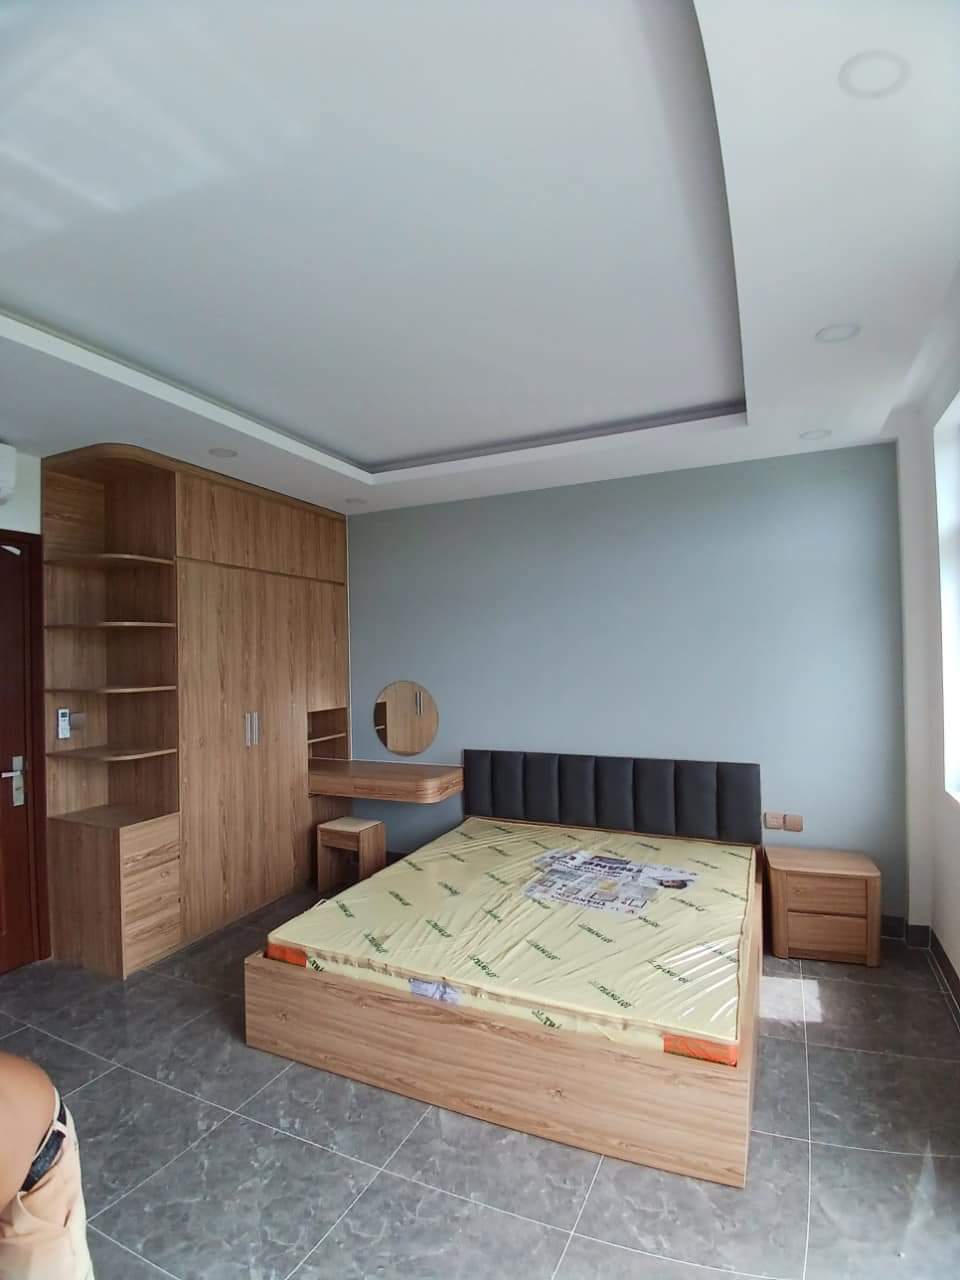 Bộ nội thất phòng ngủ HDF PN012 (Giường - Tủ quần áo - Tủ đầu giường - Bàn trang điểm) (Sao chép)